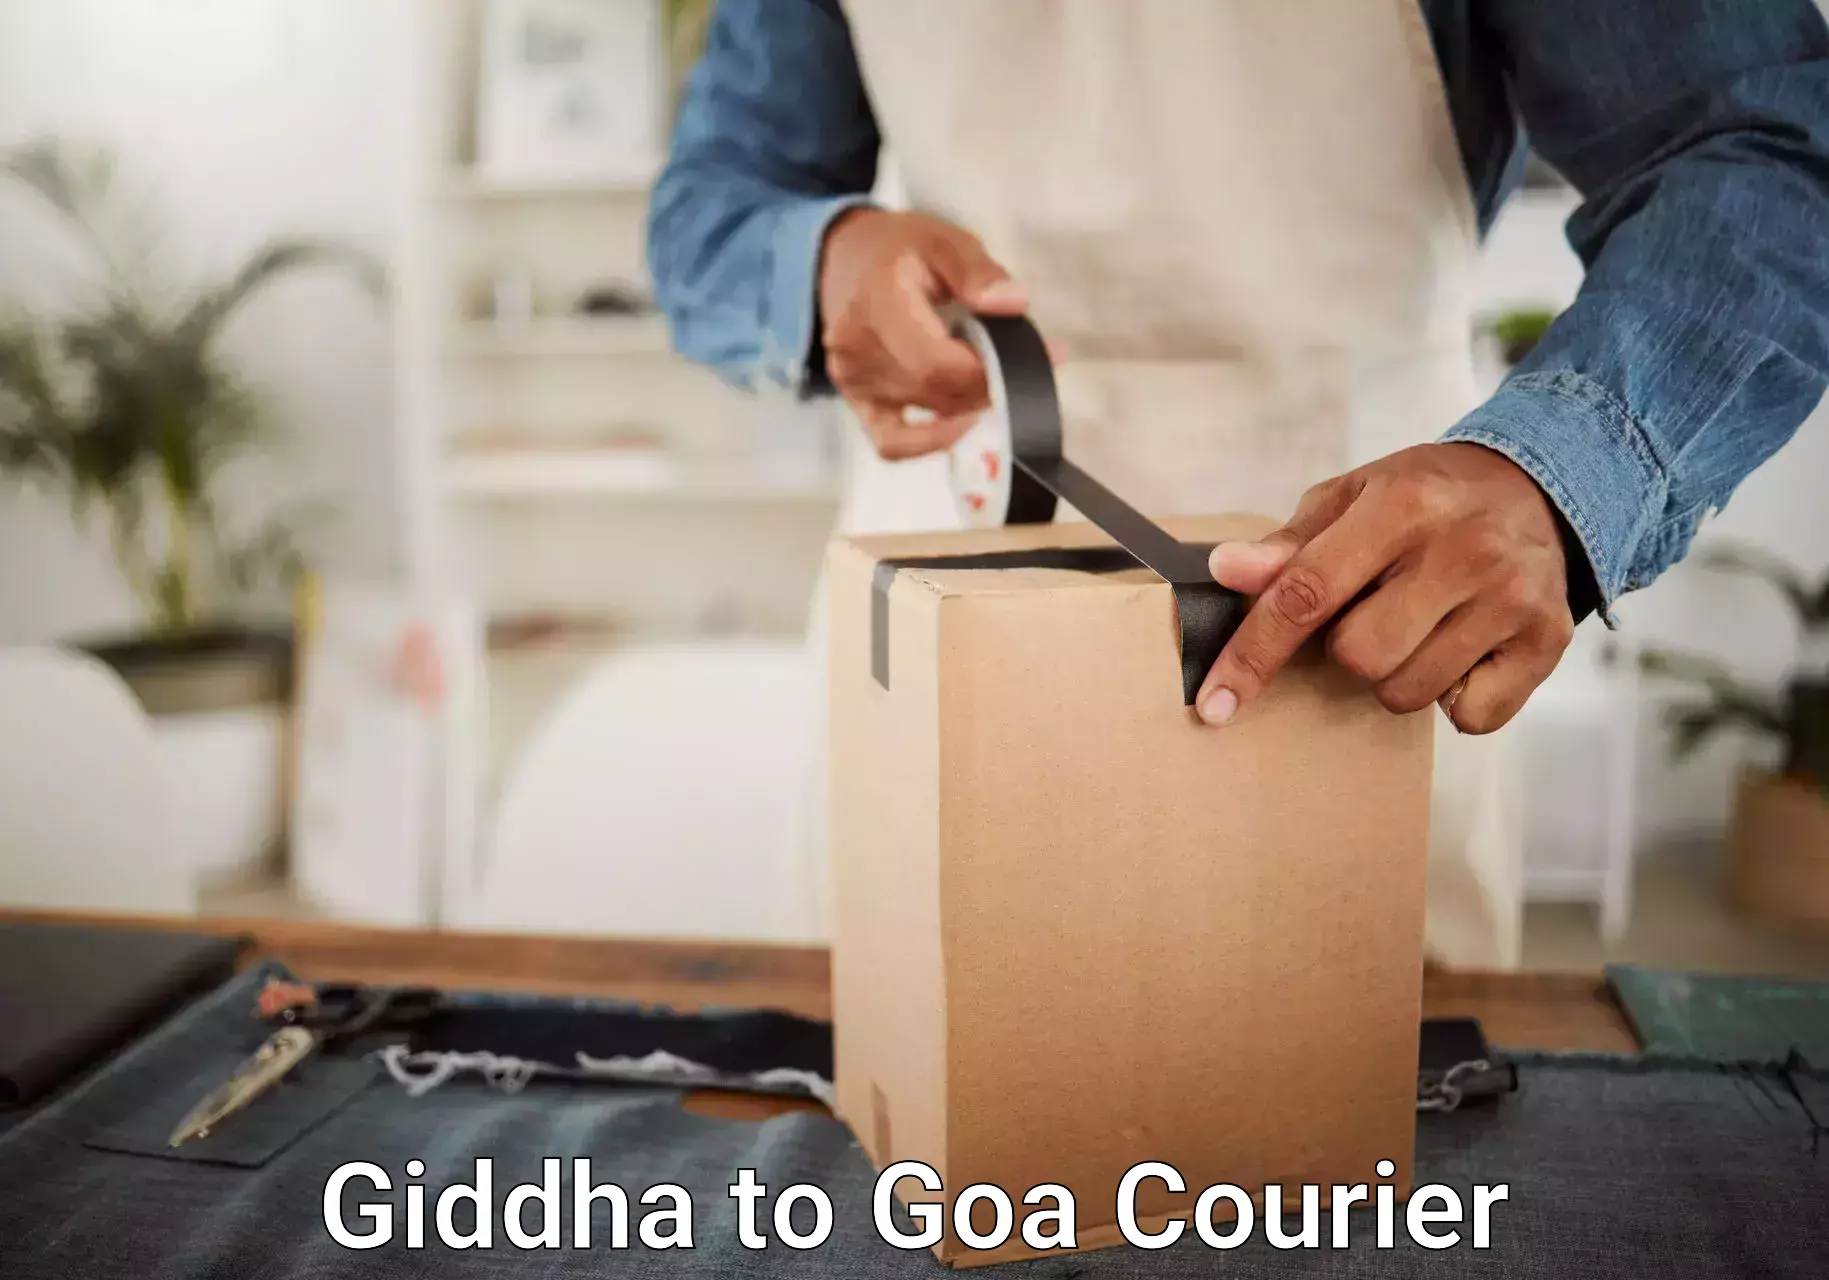 Comprehensive baggage service Giddha to NIT Goa